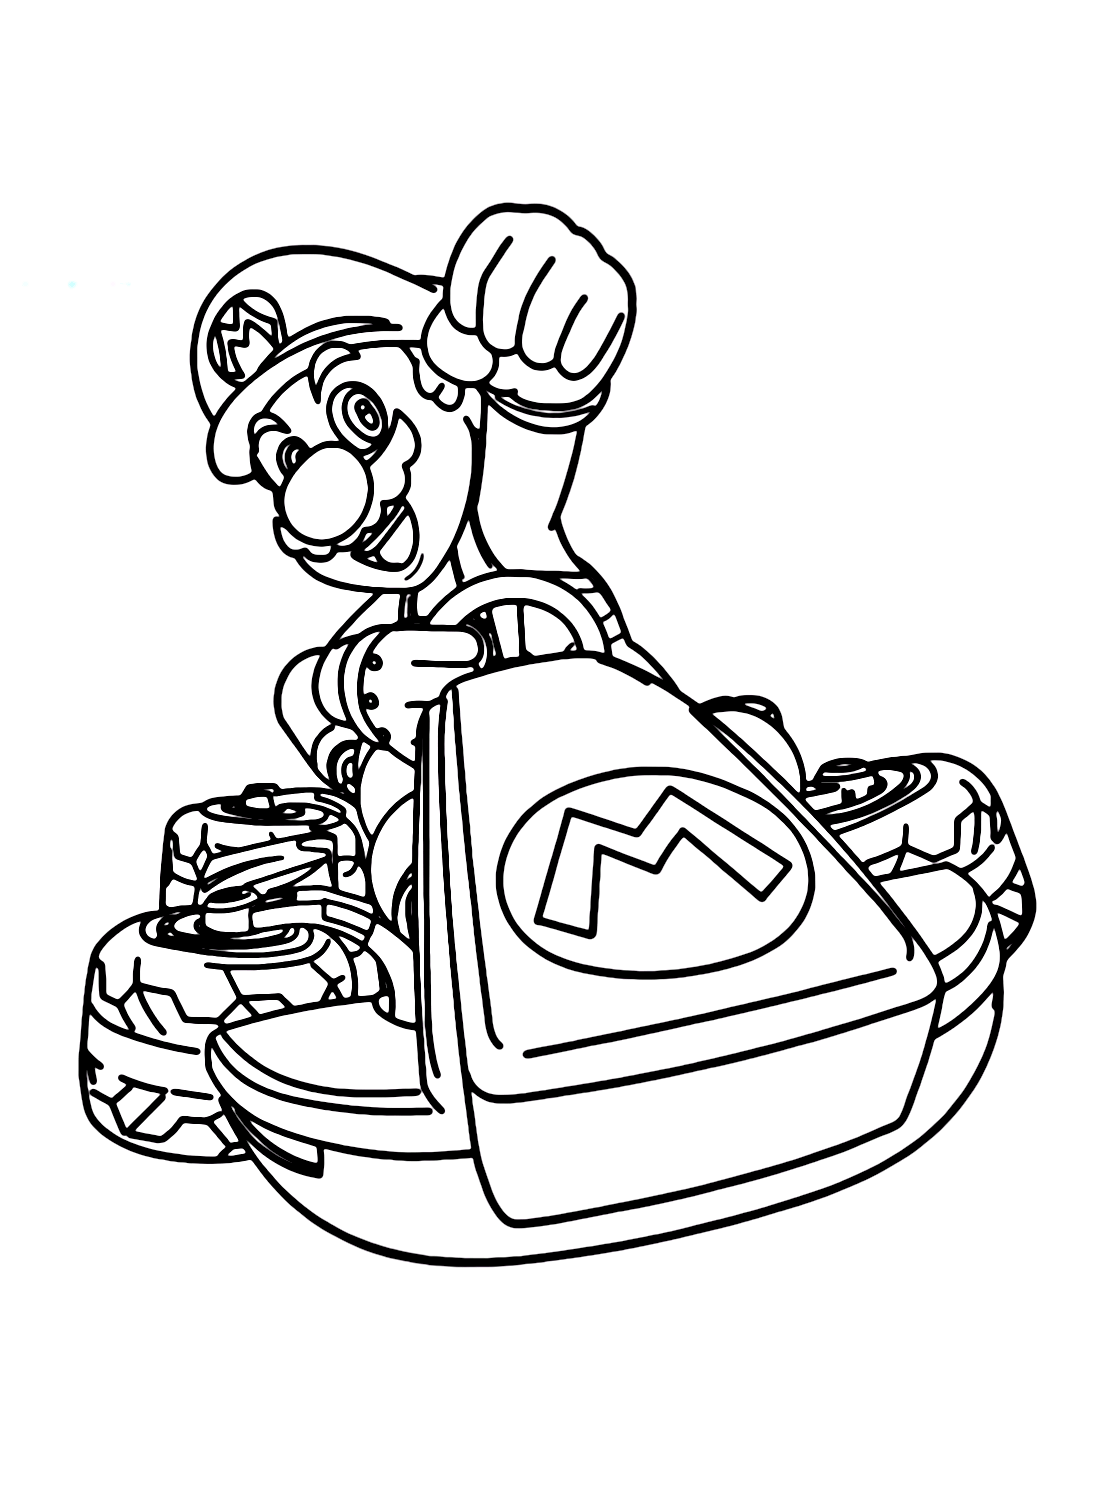 Mario van Mario Kart 8 Deluxe van Mario Kart